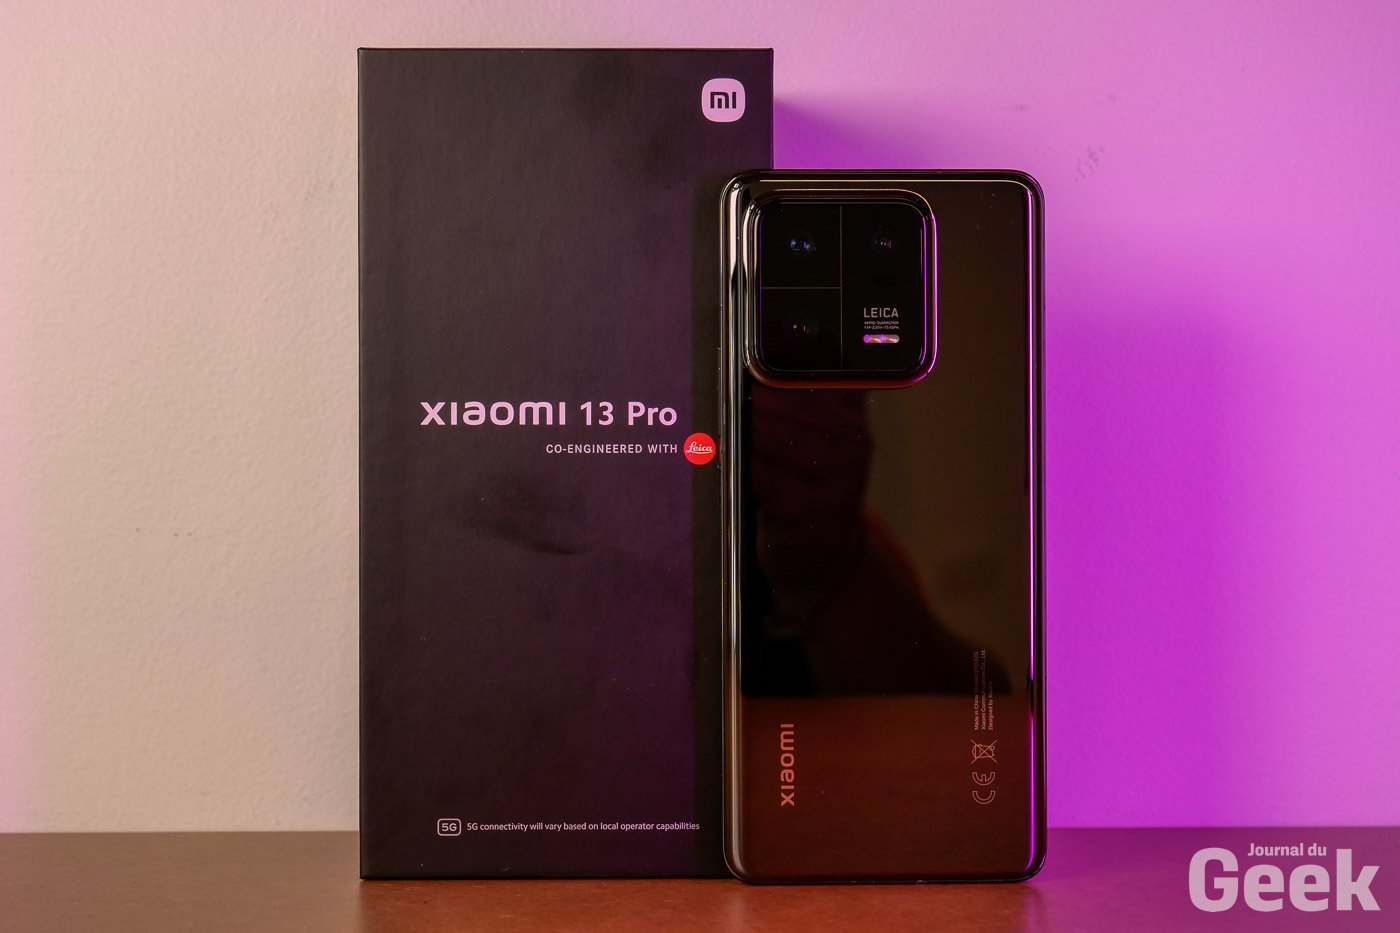 Xiaomi donne 19 minutes aux smartphones pour se recharger, pas une